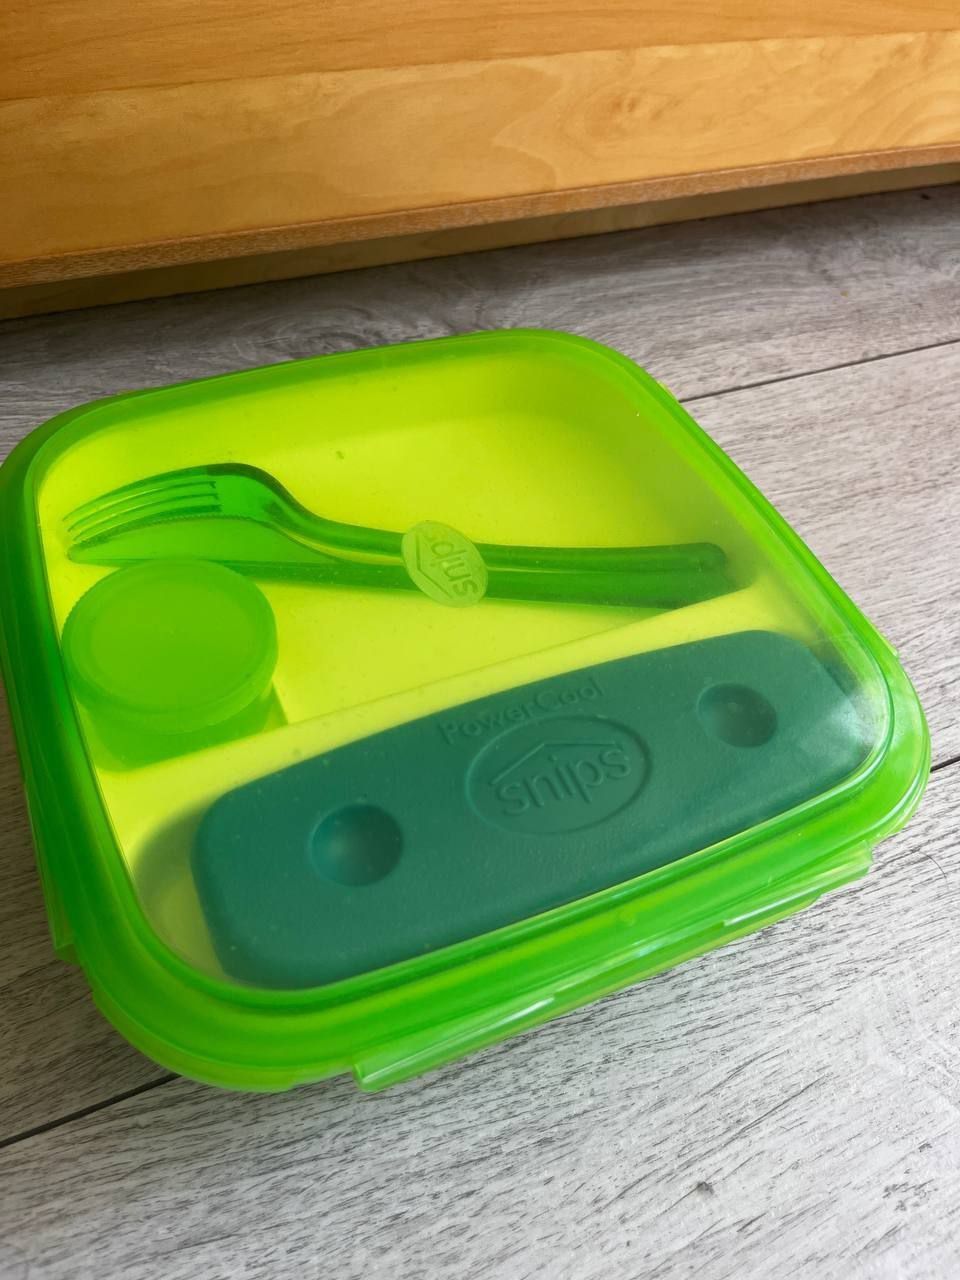 Snips Lunch box z wkładem chłodzącym i sztućcami plastikowy